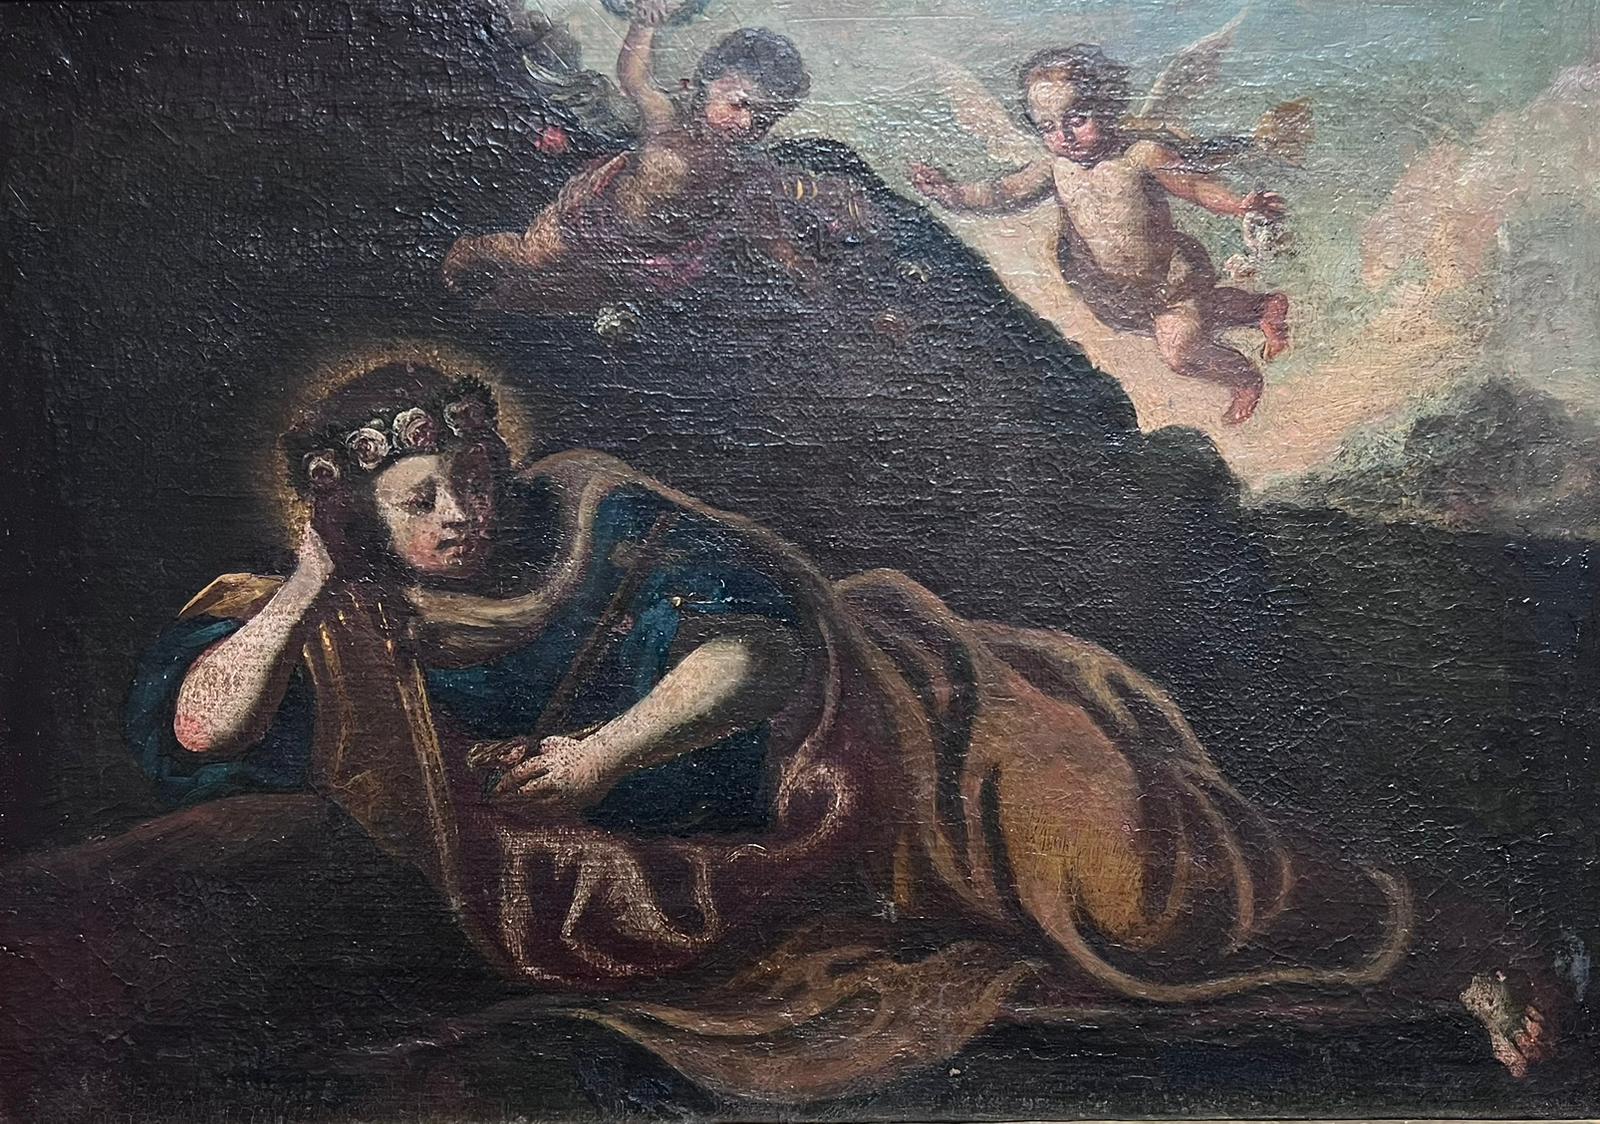 Cherubim Schwebende Frau in der Wildnis 17. Jahrhundert Italienischer alter Meister Ölgemälde  – Painting von Italian 17th Century Old Master